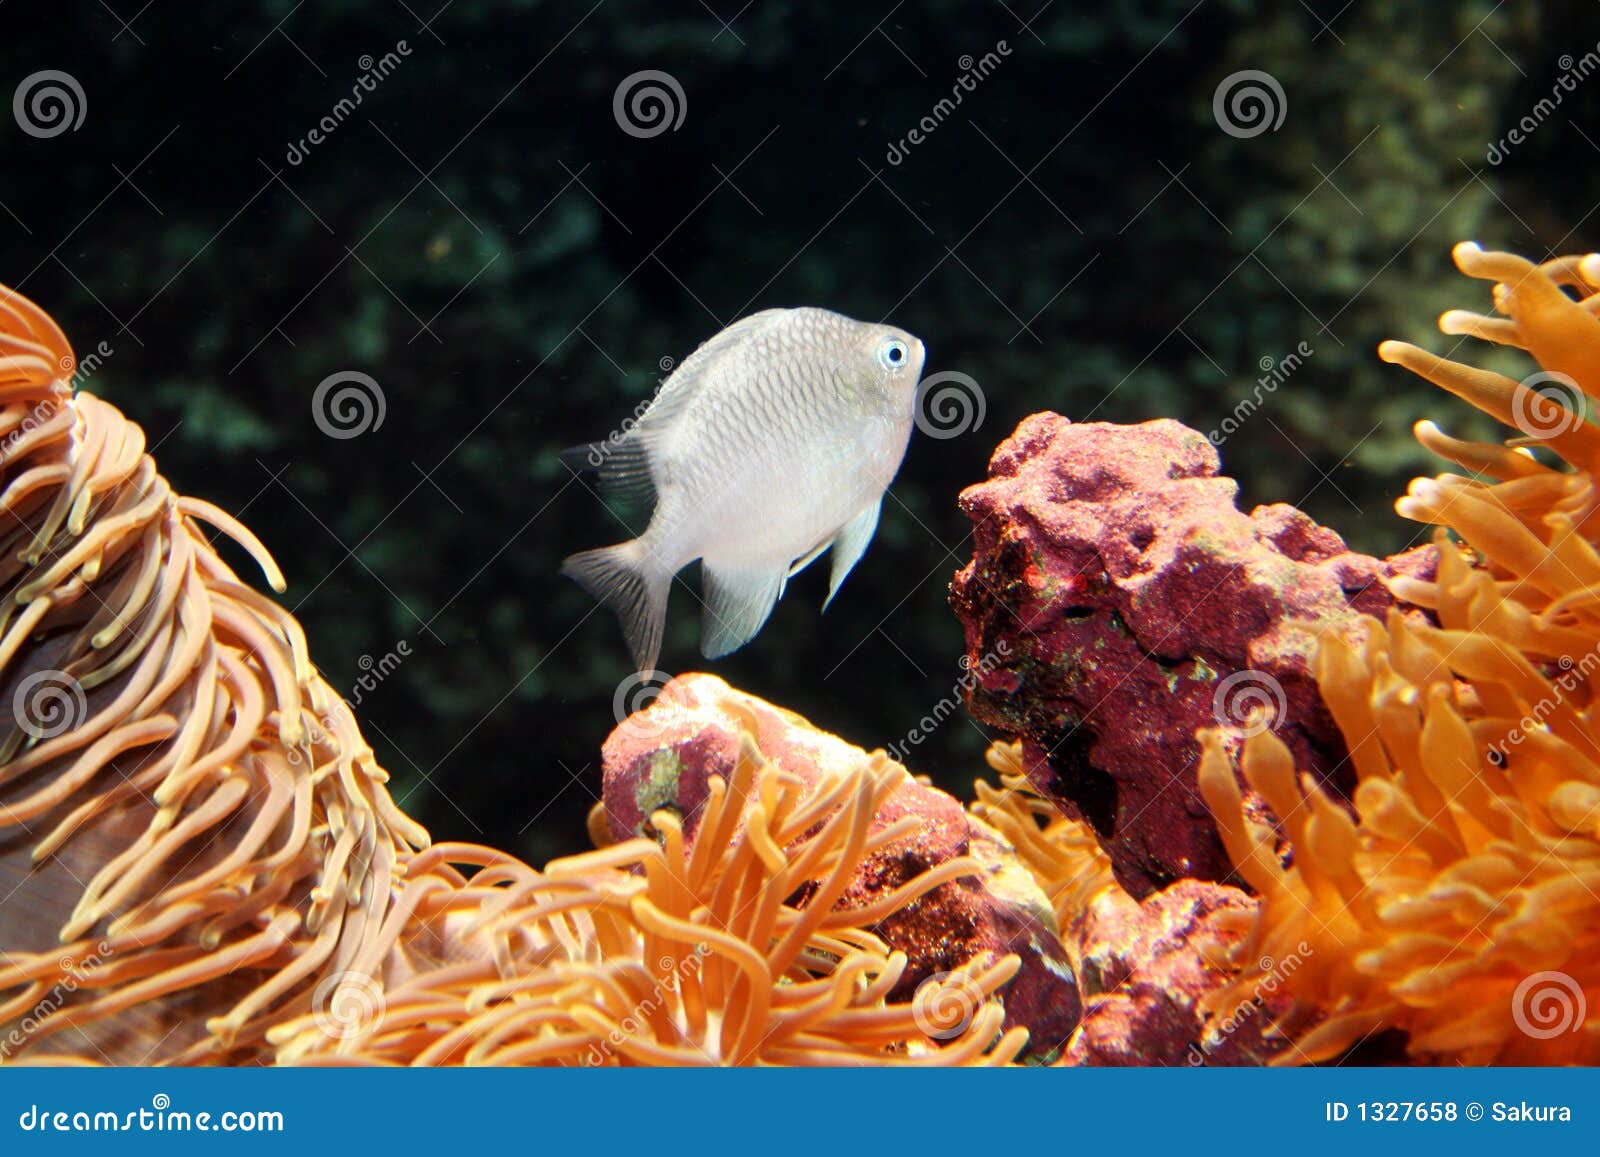 White Fish in the Ocean stock photo. Image of aquarium